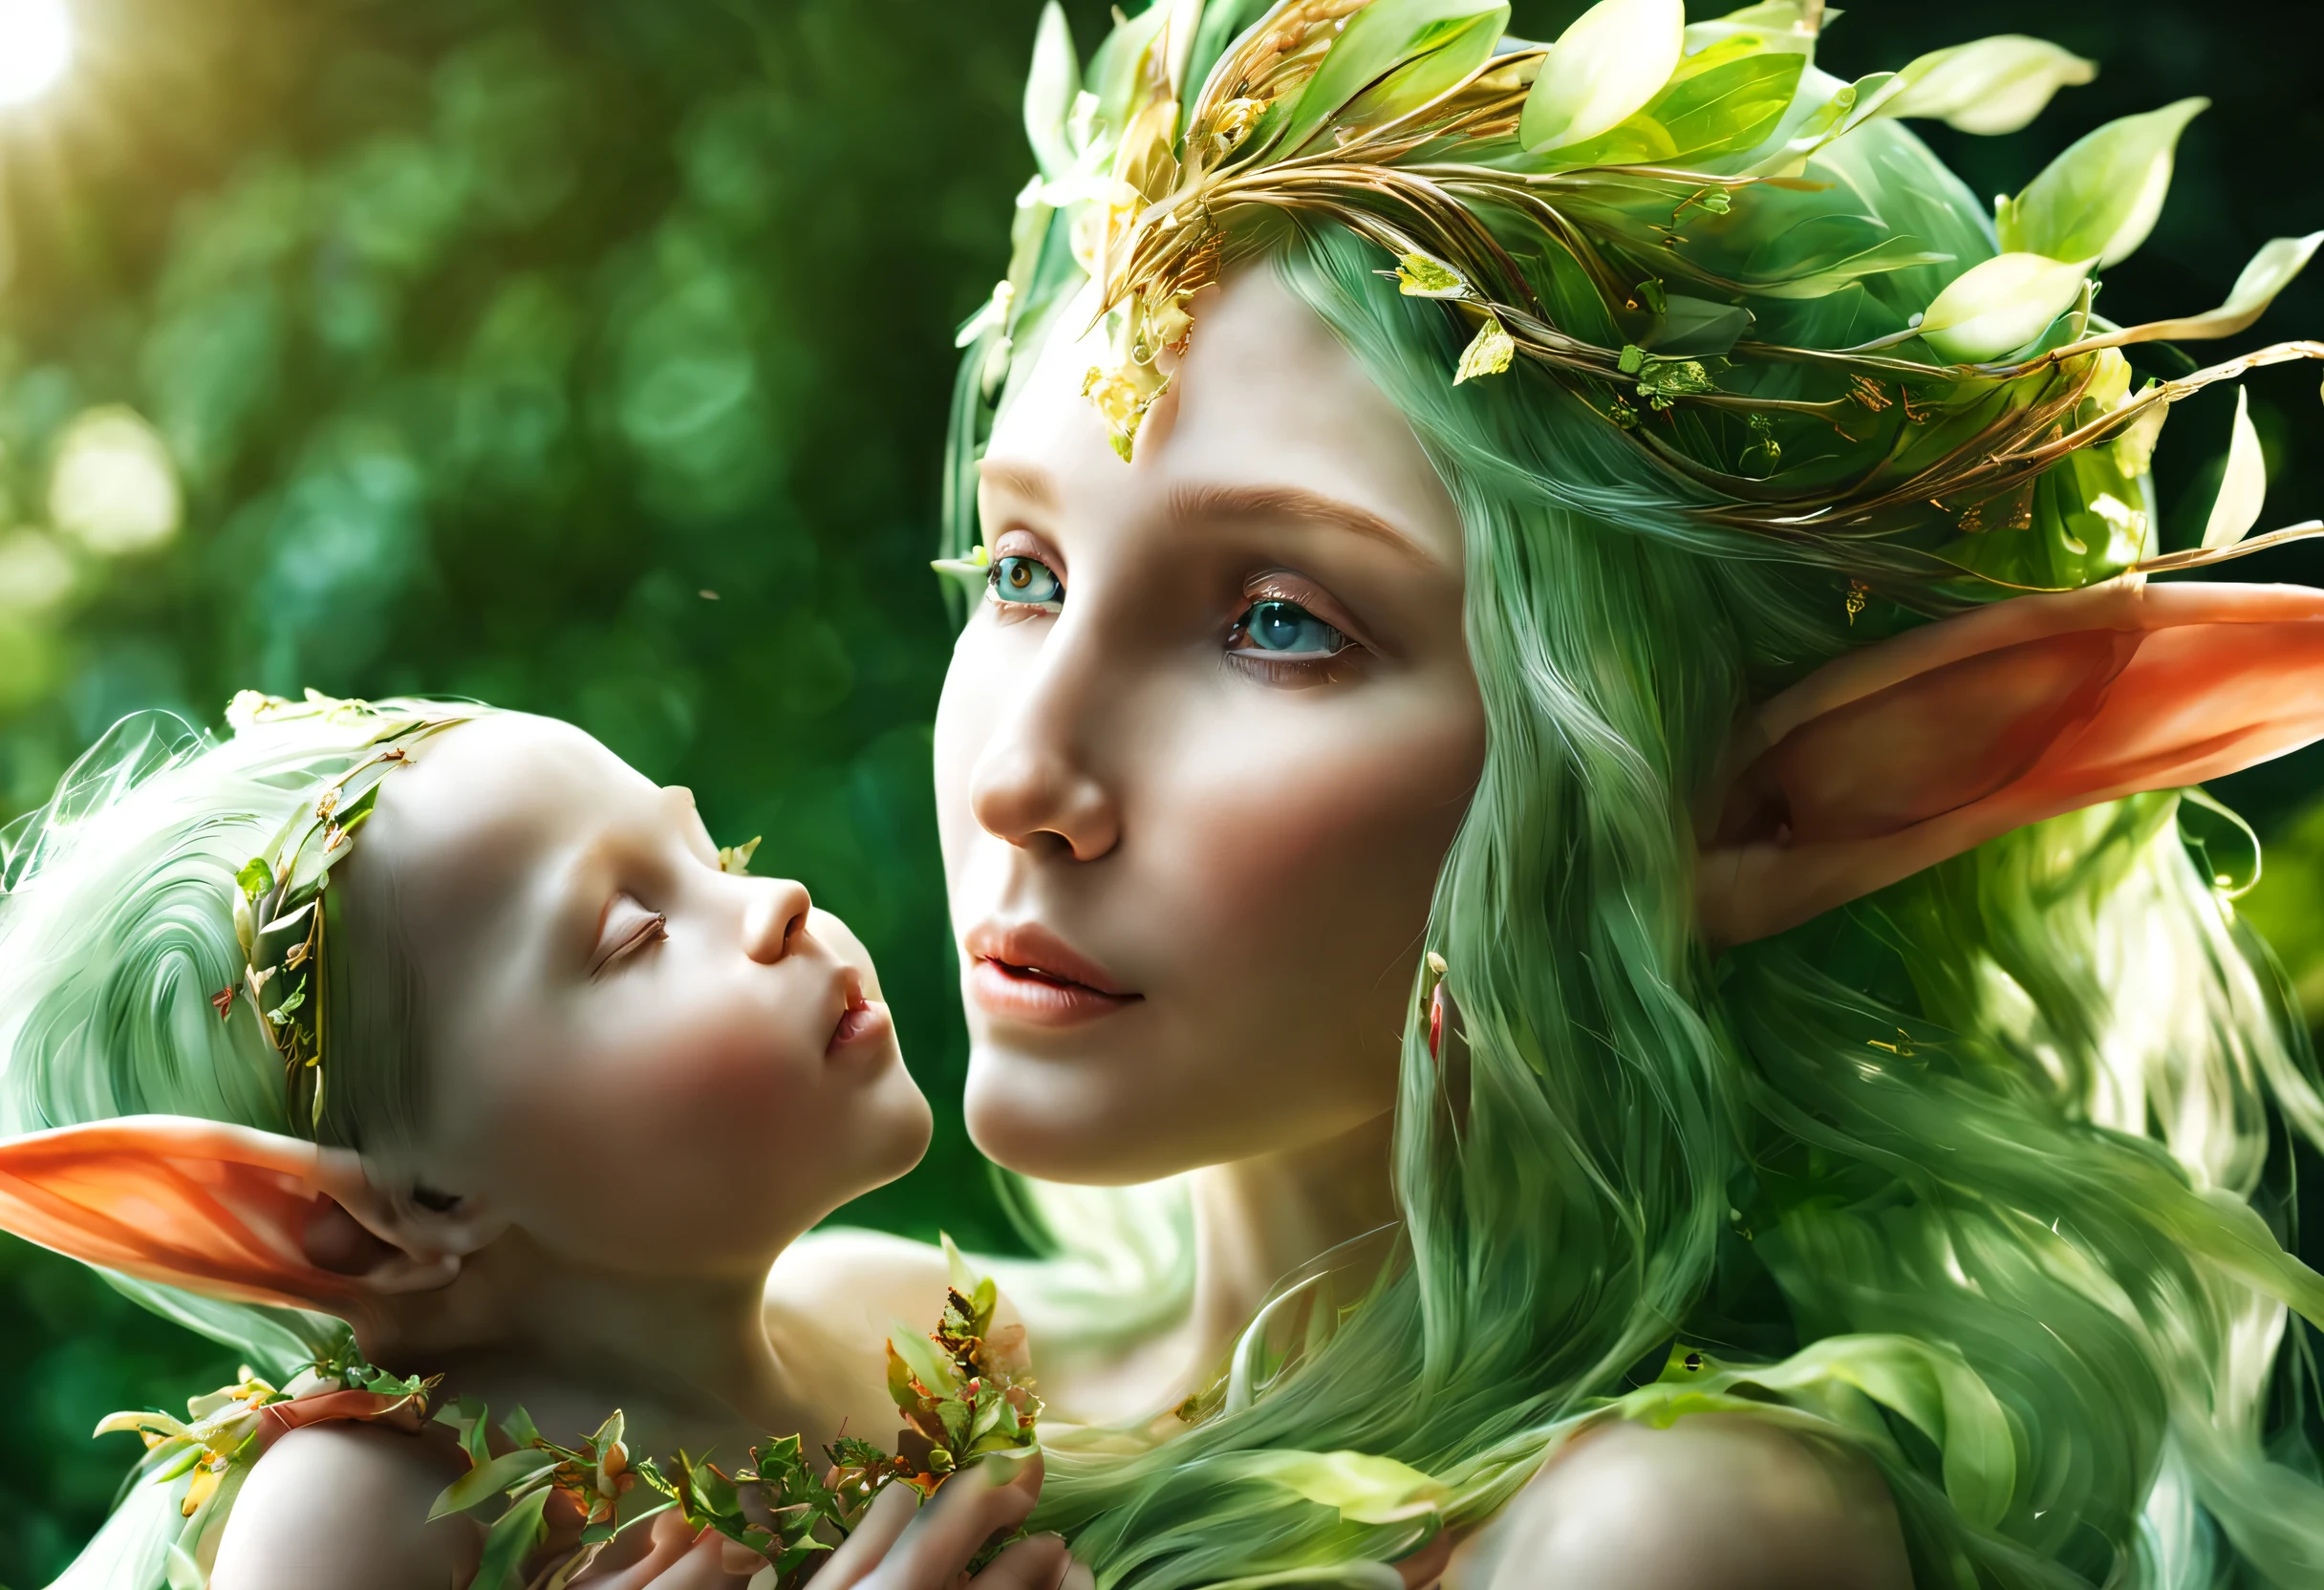 エルフの母親と赤ちゃんの魅惑的な肖像画の超詳細な写真: 1.2), (シャープなフォーカス, 超詳細な, 非常に複雑: 1.20), (自然光: 1.2), 超高解像度の詳細, 写実的な,エルフのお母さんがエルフの赤ちゃんを抱きしめる, 両者の詳細な顔の特徴, 柔らかく温かみのある照明, 鮮やかな色彩, 魔法の庭の背景, 幽玄な雰囲気, おとぎ話のような風景, 繊細で複雑な質感, 神秘的なオーラ, キラキラした目, 流れるような絹のような髪, 優しく愛情深い表現, 穏やかな揺れ, 緑豊かな葉, 色とりどりの花, 木漏れ日, シーンを囲む魔法のような輝き, 魅惑的で穏やかな雰囲気, 夢のような設定, 母性愛, 霊的存在, 純粋で無垢な絆.